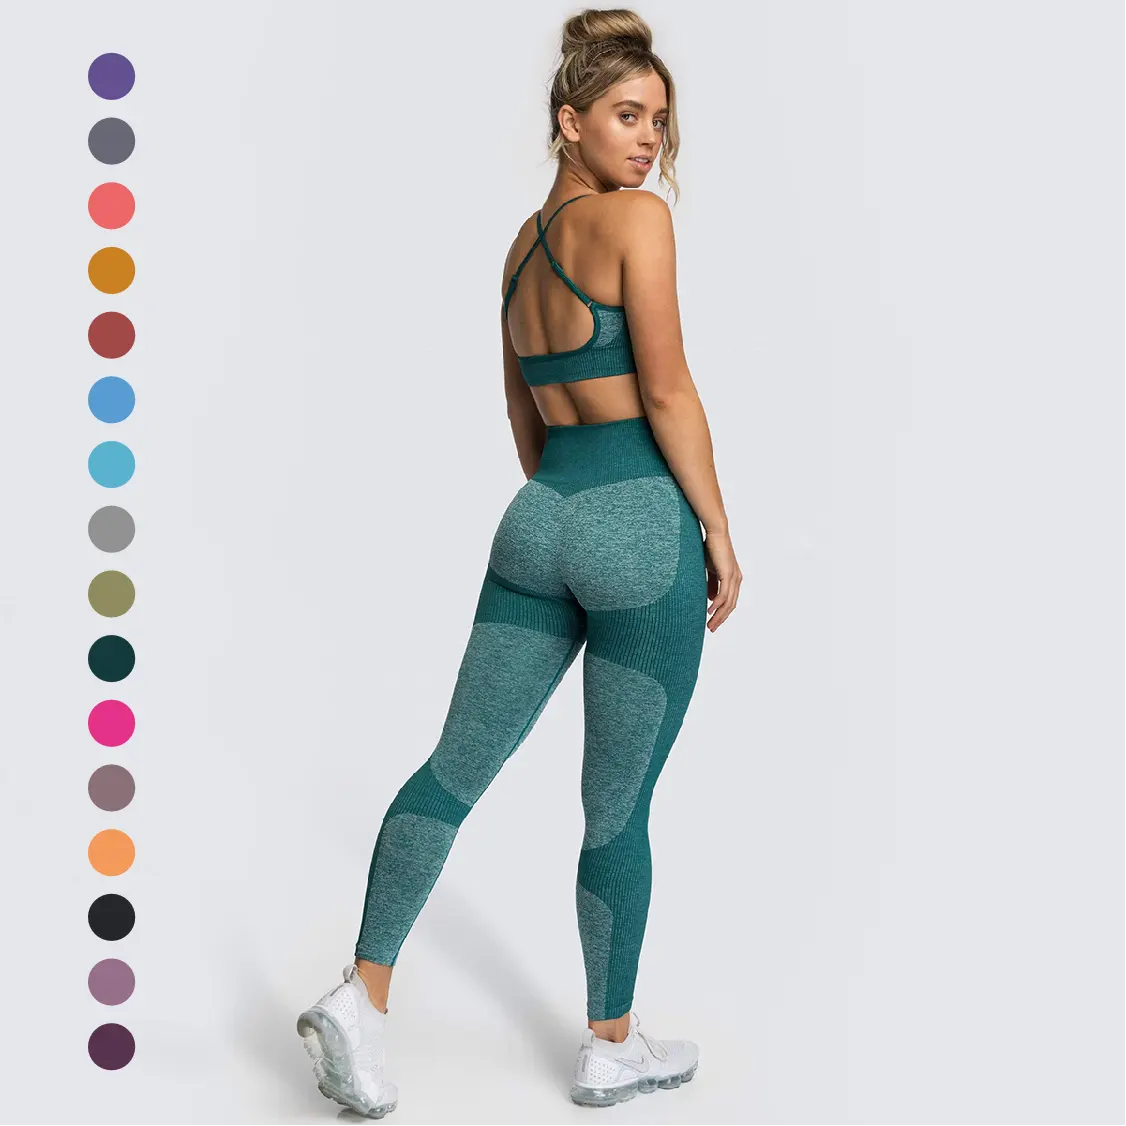 Custom Seamless Sports Bra High Waist Leggings Workout Gym Fitness Running Yoga Sets 2 Piece Set Women